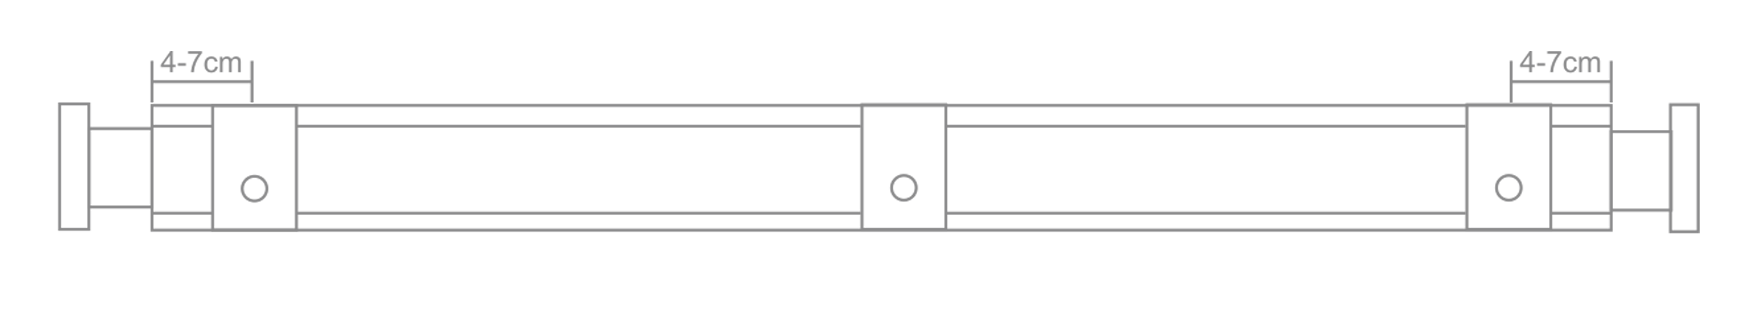 固定架兩端4-7cm